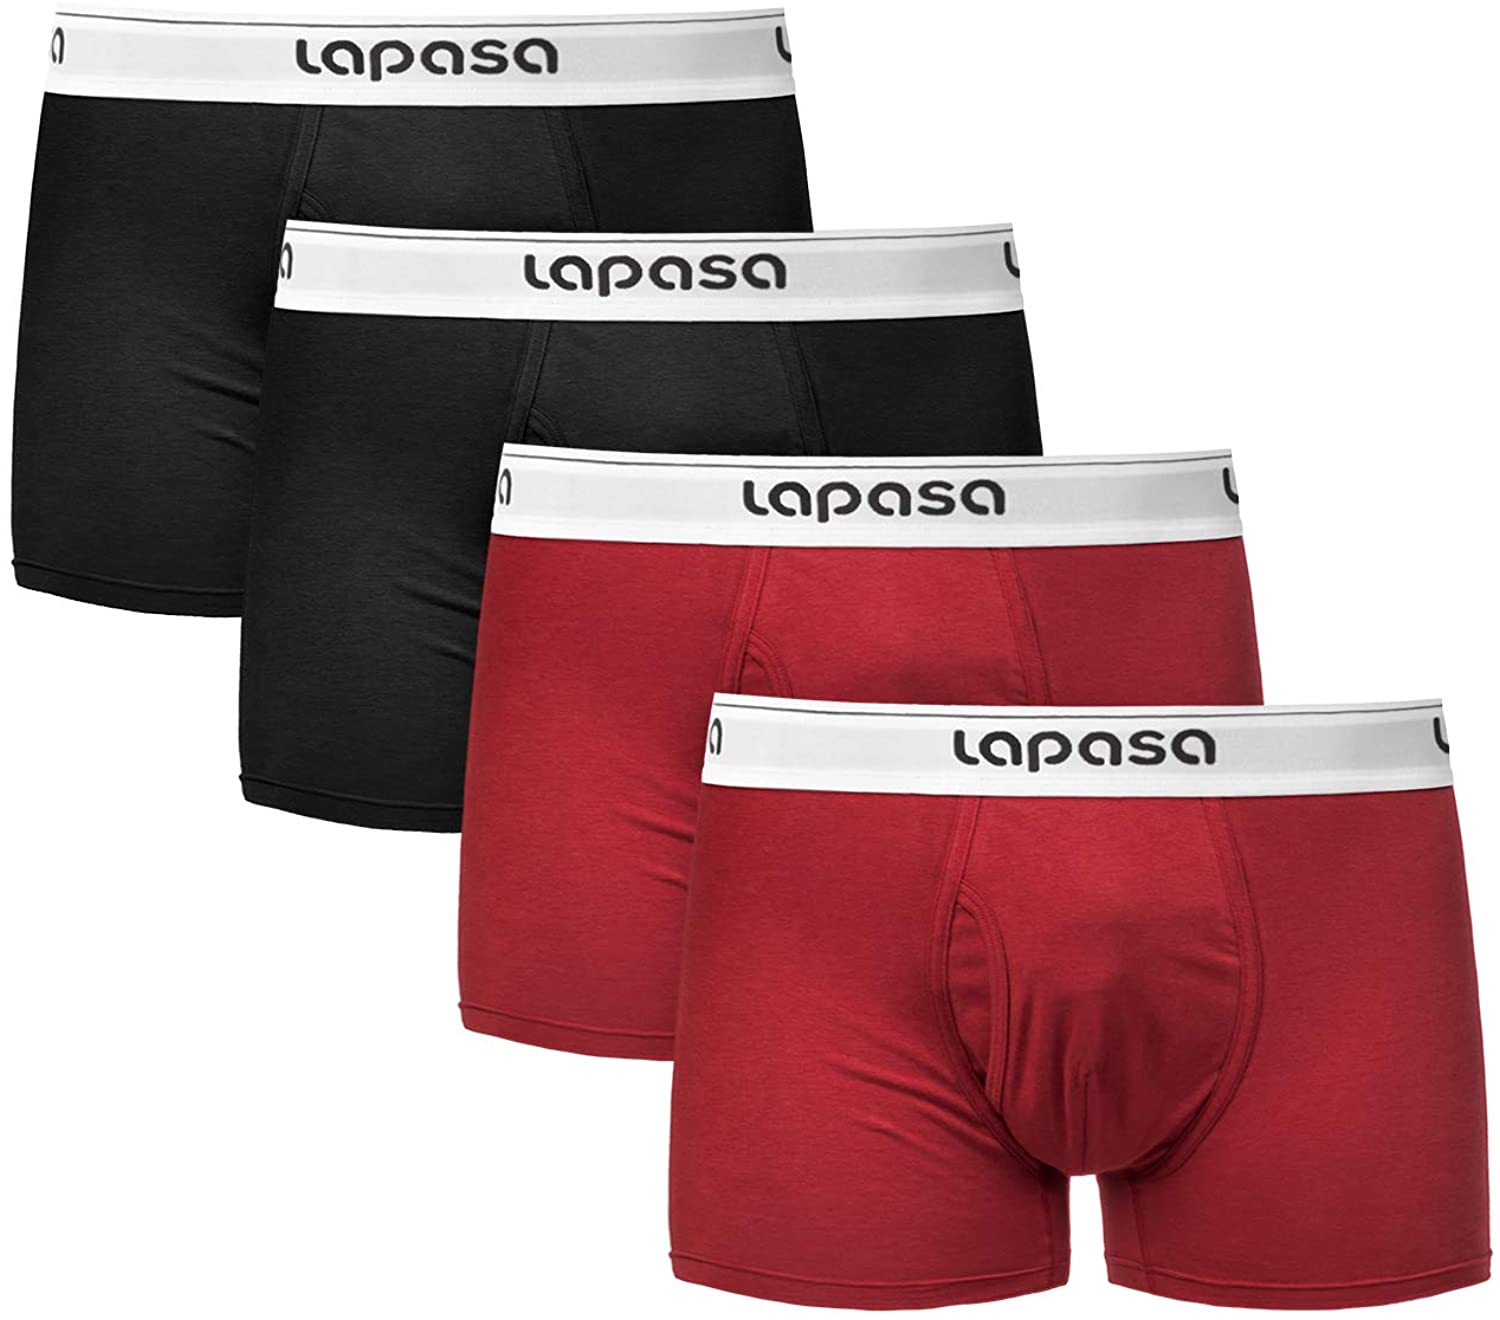 Lapasa Men's underwear ELS Combed Cotton Hip Briefs Stretch Underpants  Reviews 